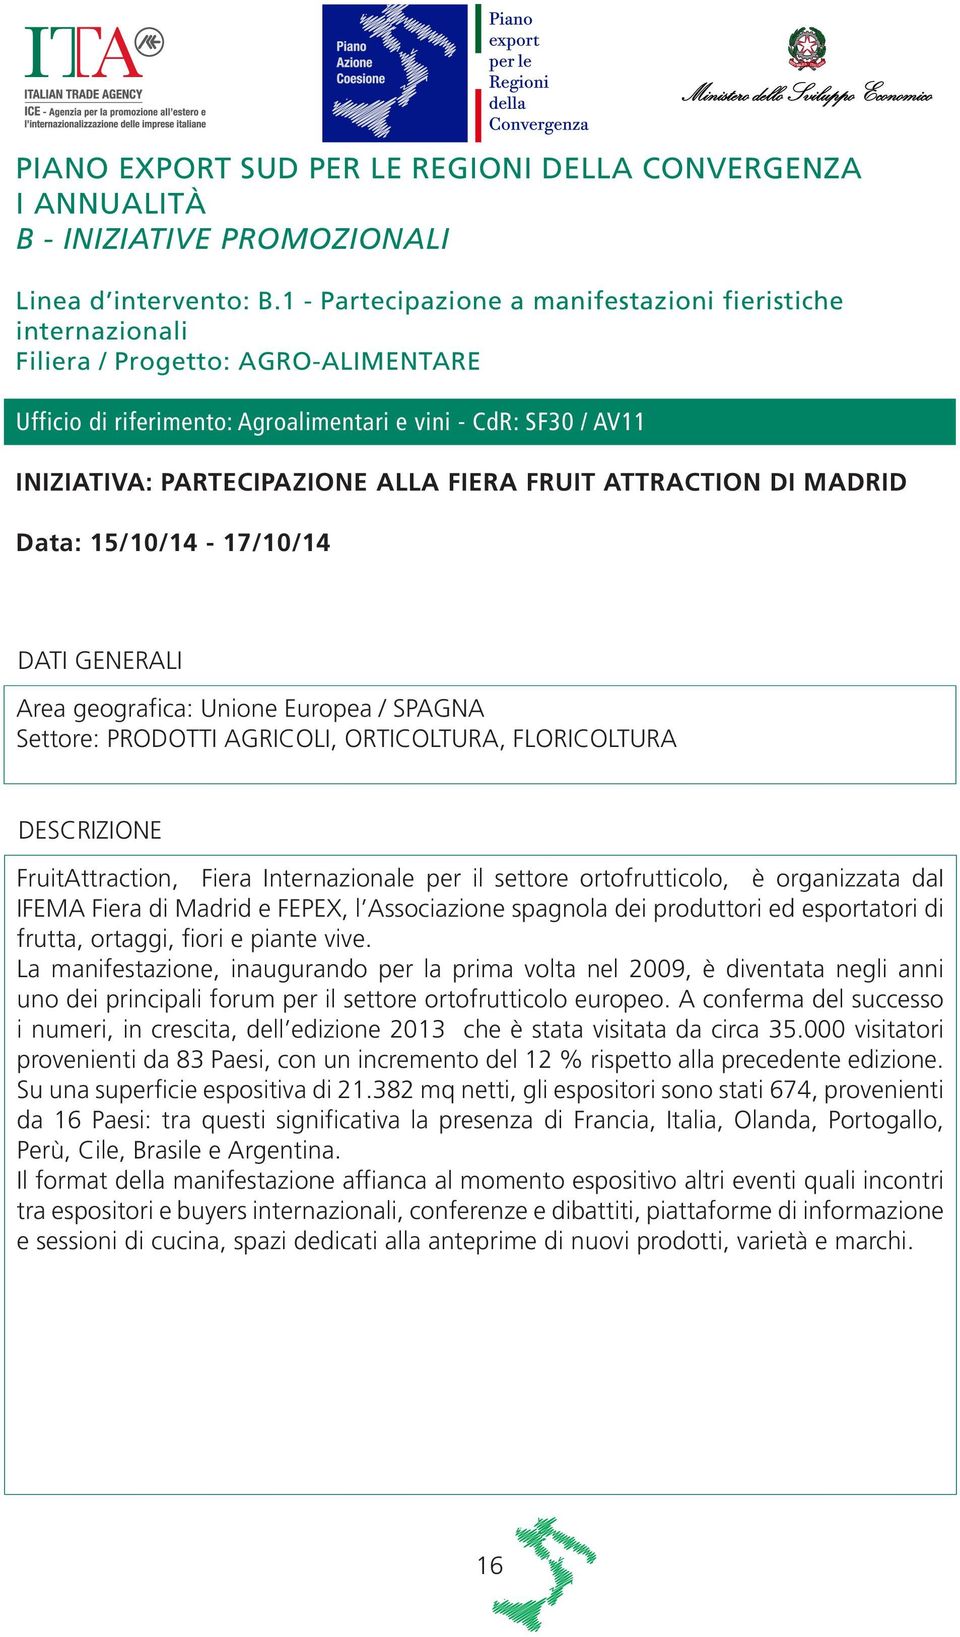 FIERA FRUIT ATTRACTION DI MADRID Data: 15/10/14-17/10/14 Area geografica: Unione Europea / SPAGNA Settore: PRODOTTI AGRICOLI, ORTICOLTURA, FLORICOLTURA FruitAttraction, Fiera Internazionale per il